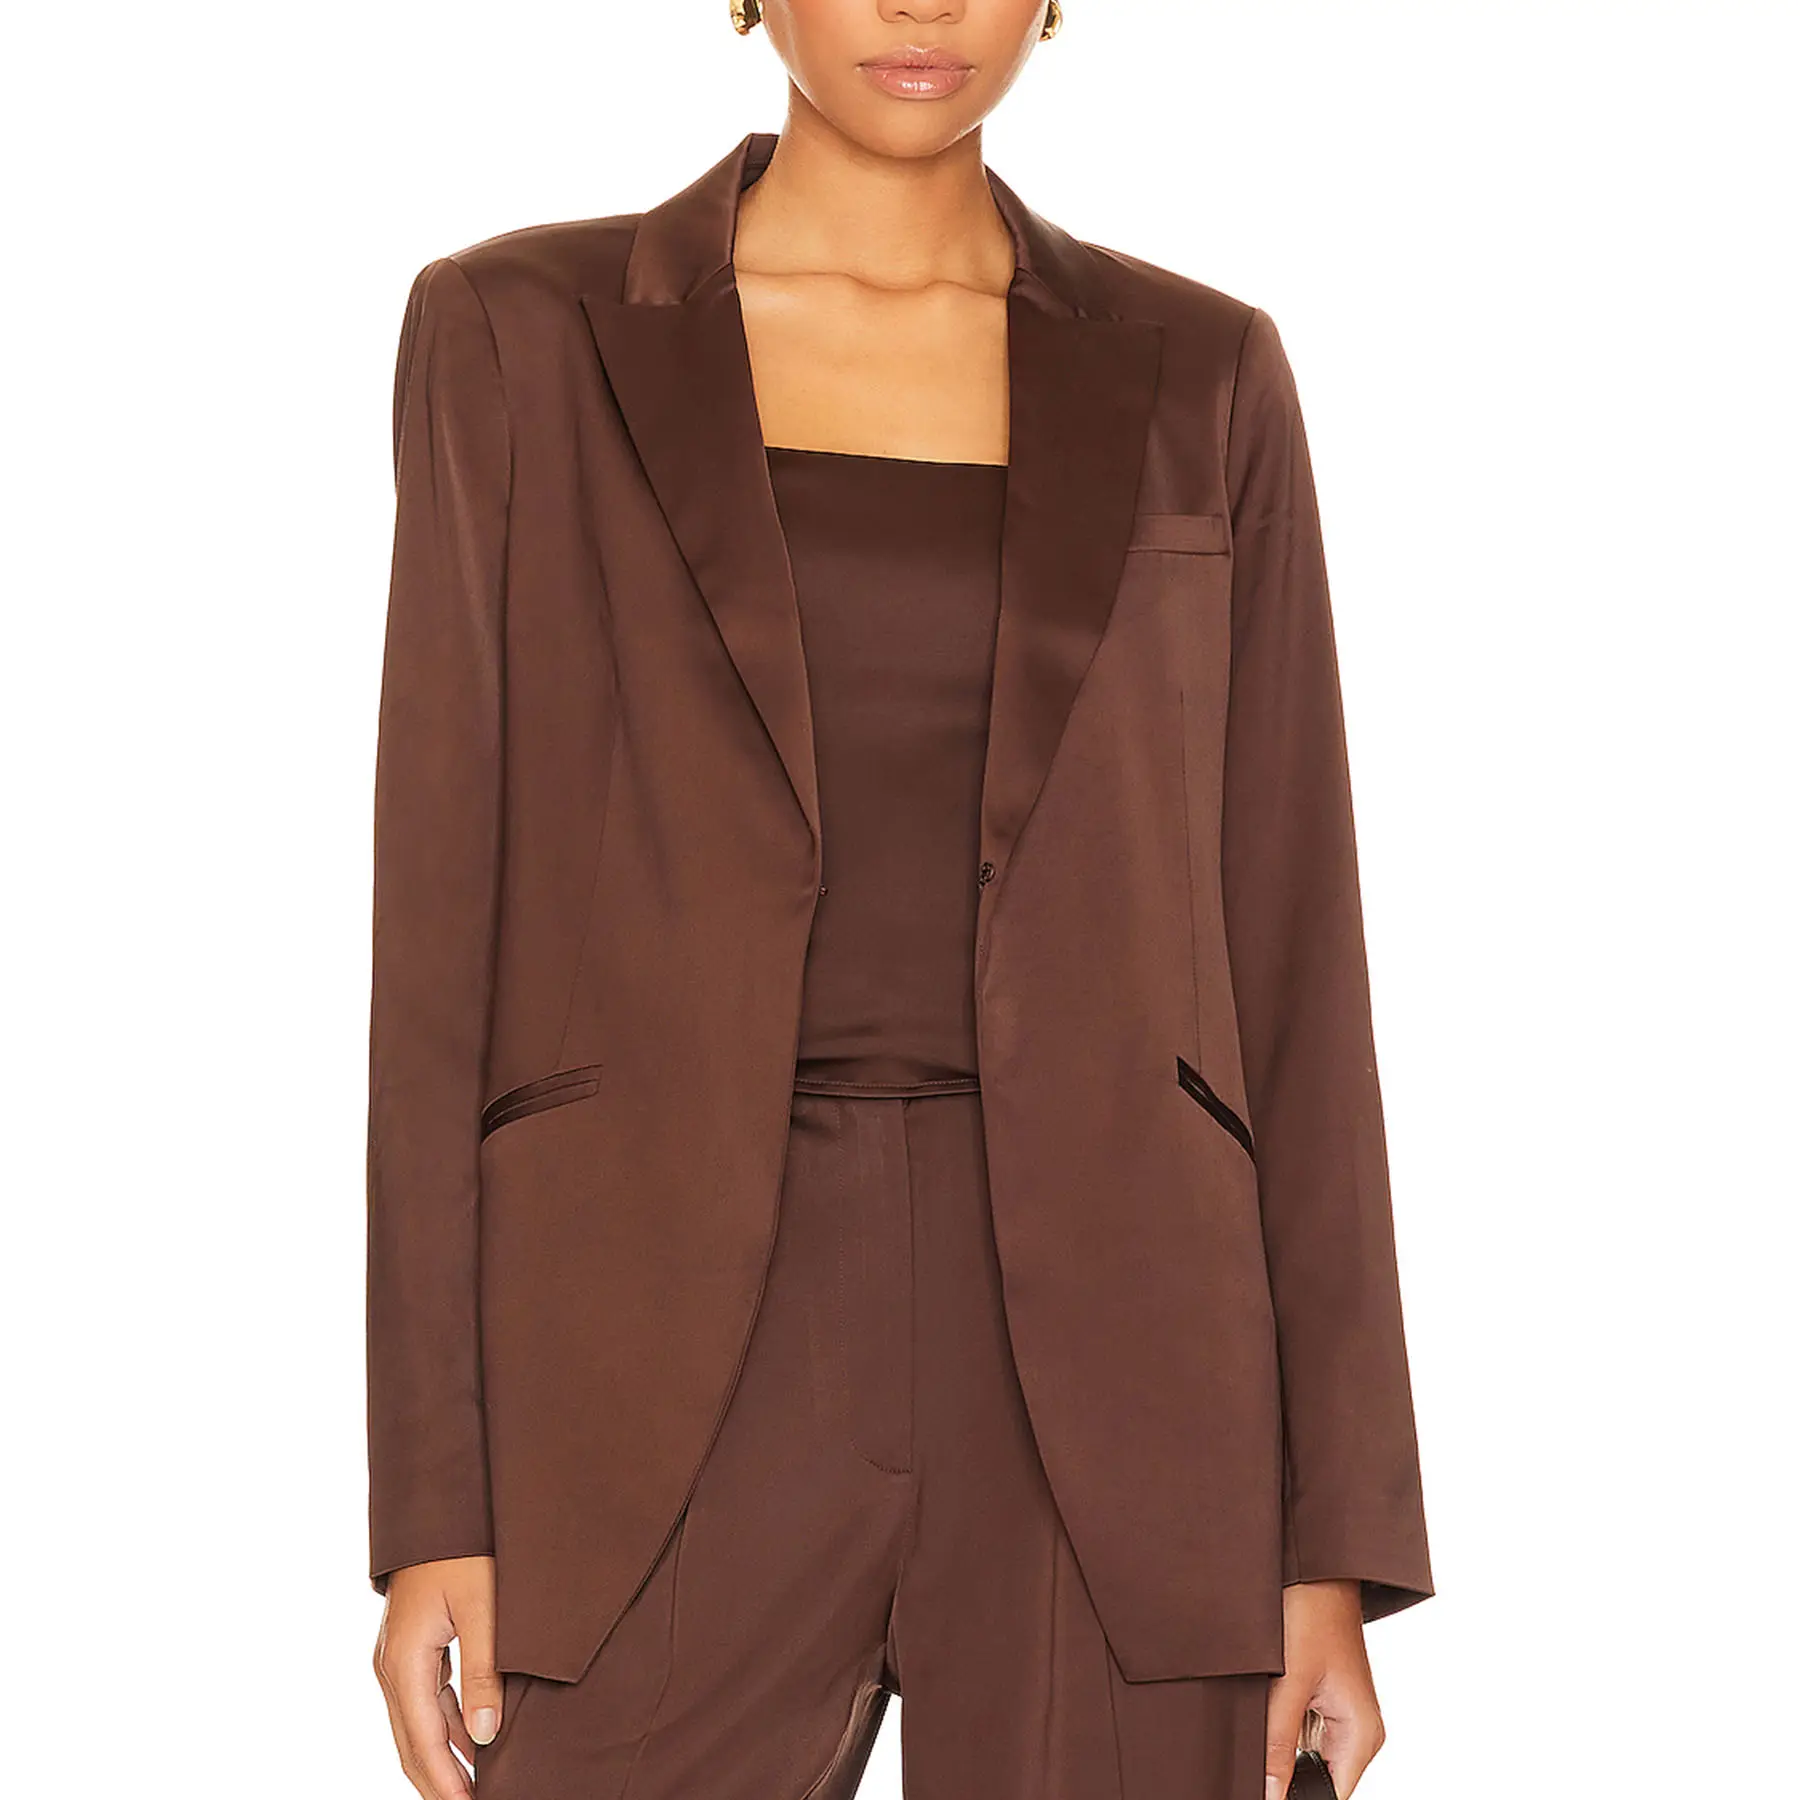 2023 Herbst schlanke einfache elegante seidige Stoff Anzug Stil Mantel lose Stil hohe Qualität kann angepasst werden